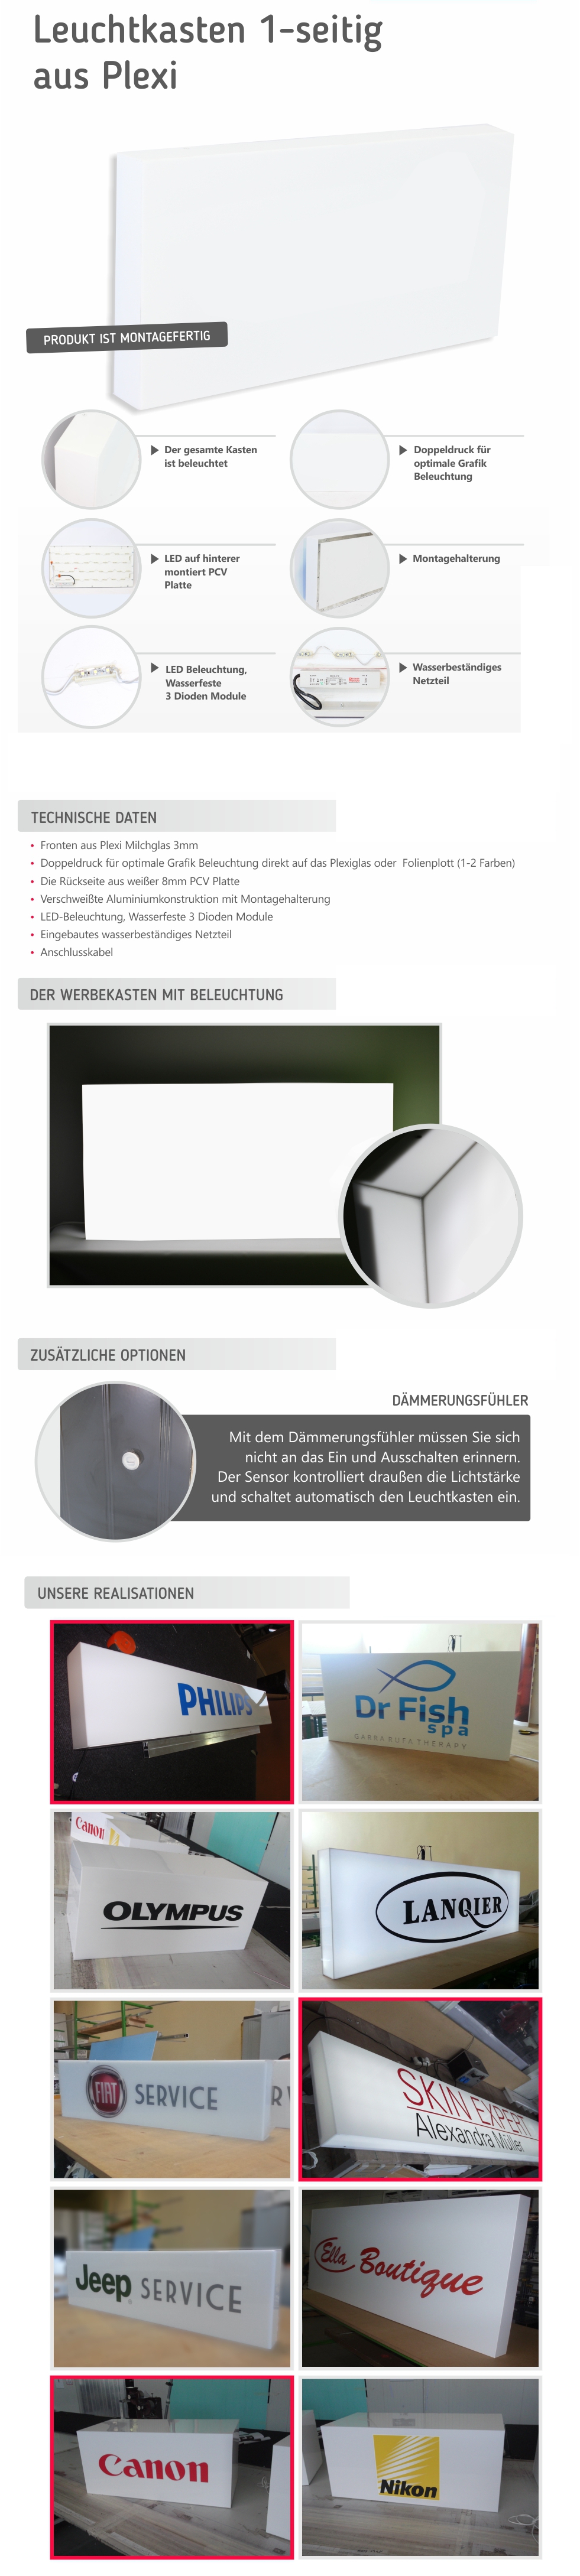 Leuchtkasten aus PLEXI LED 90x50cm 1-seitig Digitaldruck Design Gratis